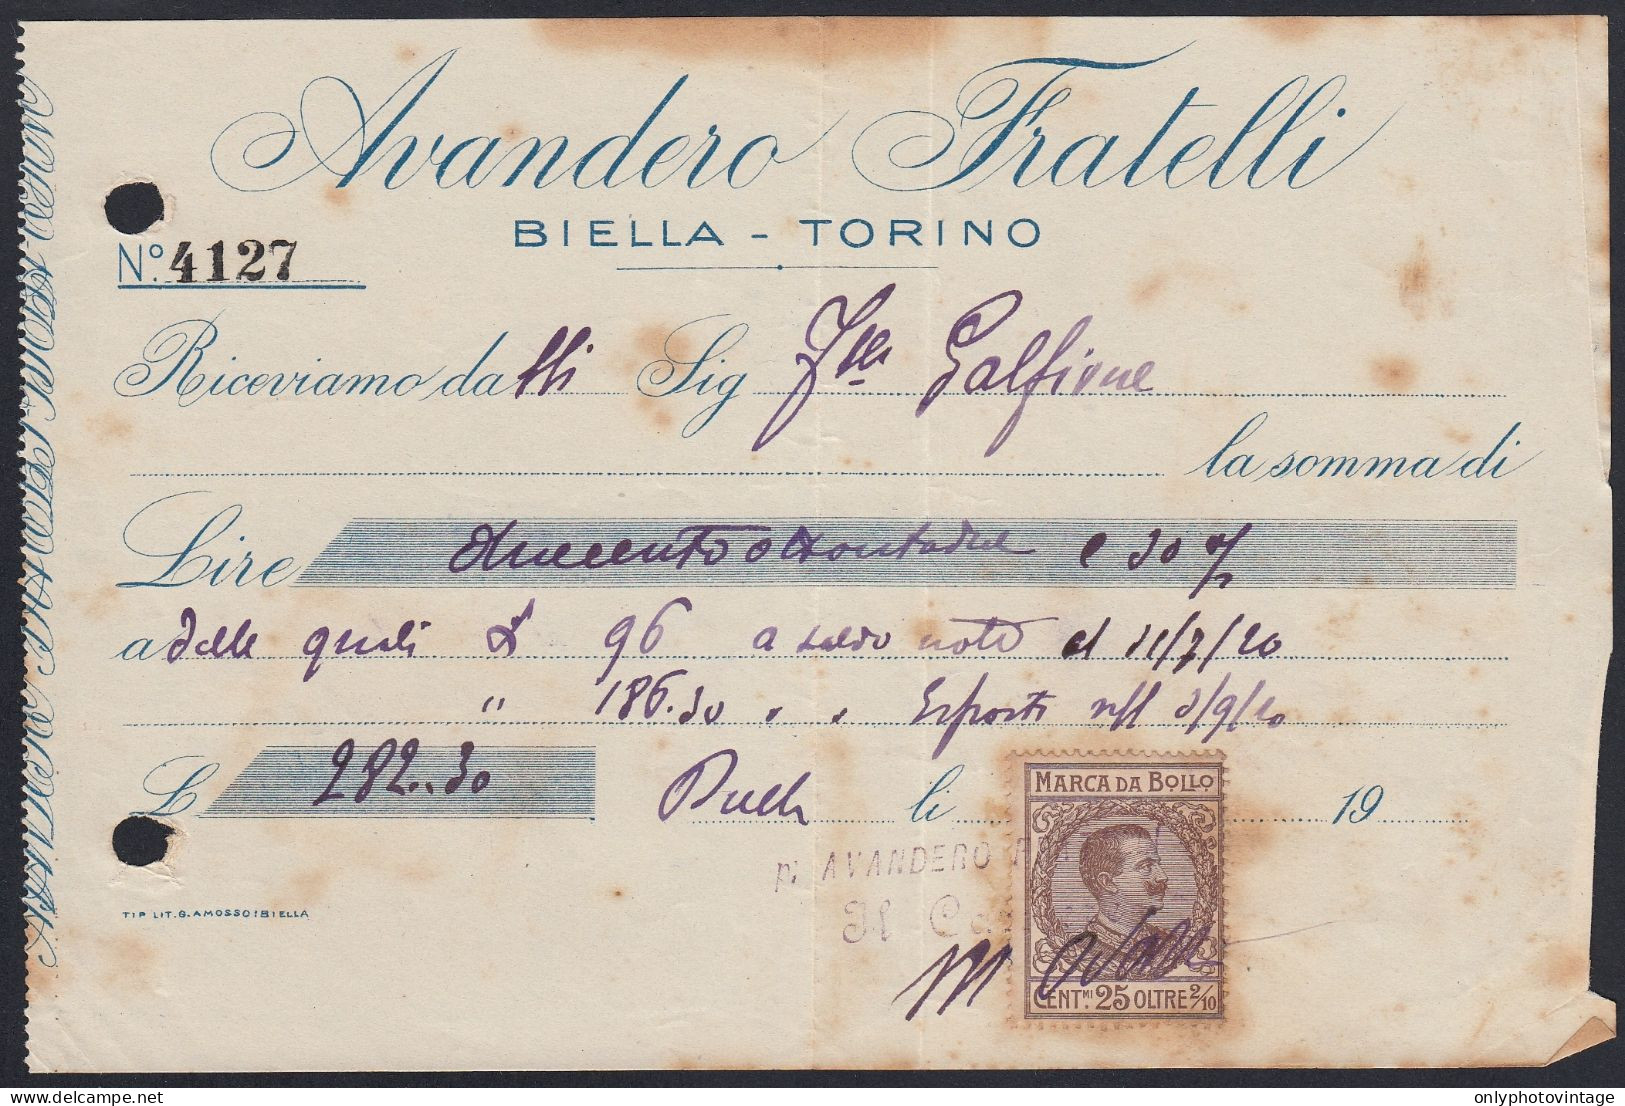 Biella 1920 - Avandero Fratelli - Marca Da Bollo - Ricevuta Pagamento - Italia